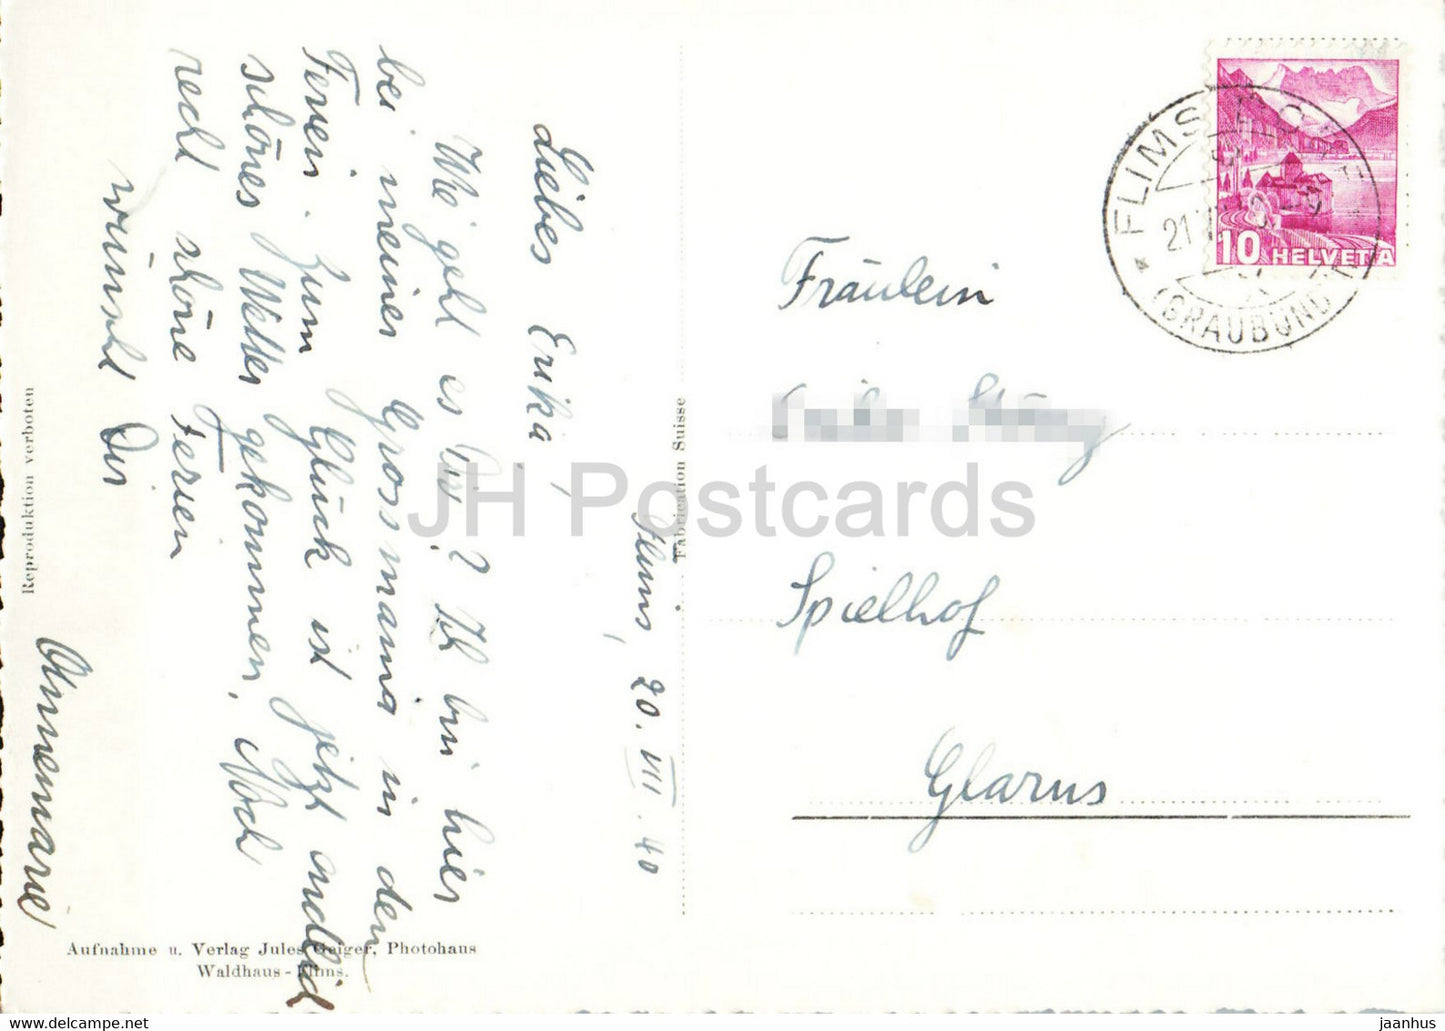 Flims mit Flimserstein - 1639 - old postcard - 1940 - Switzerland - used